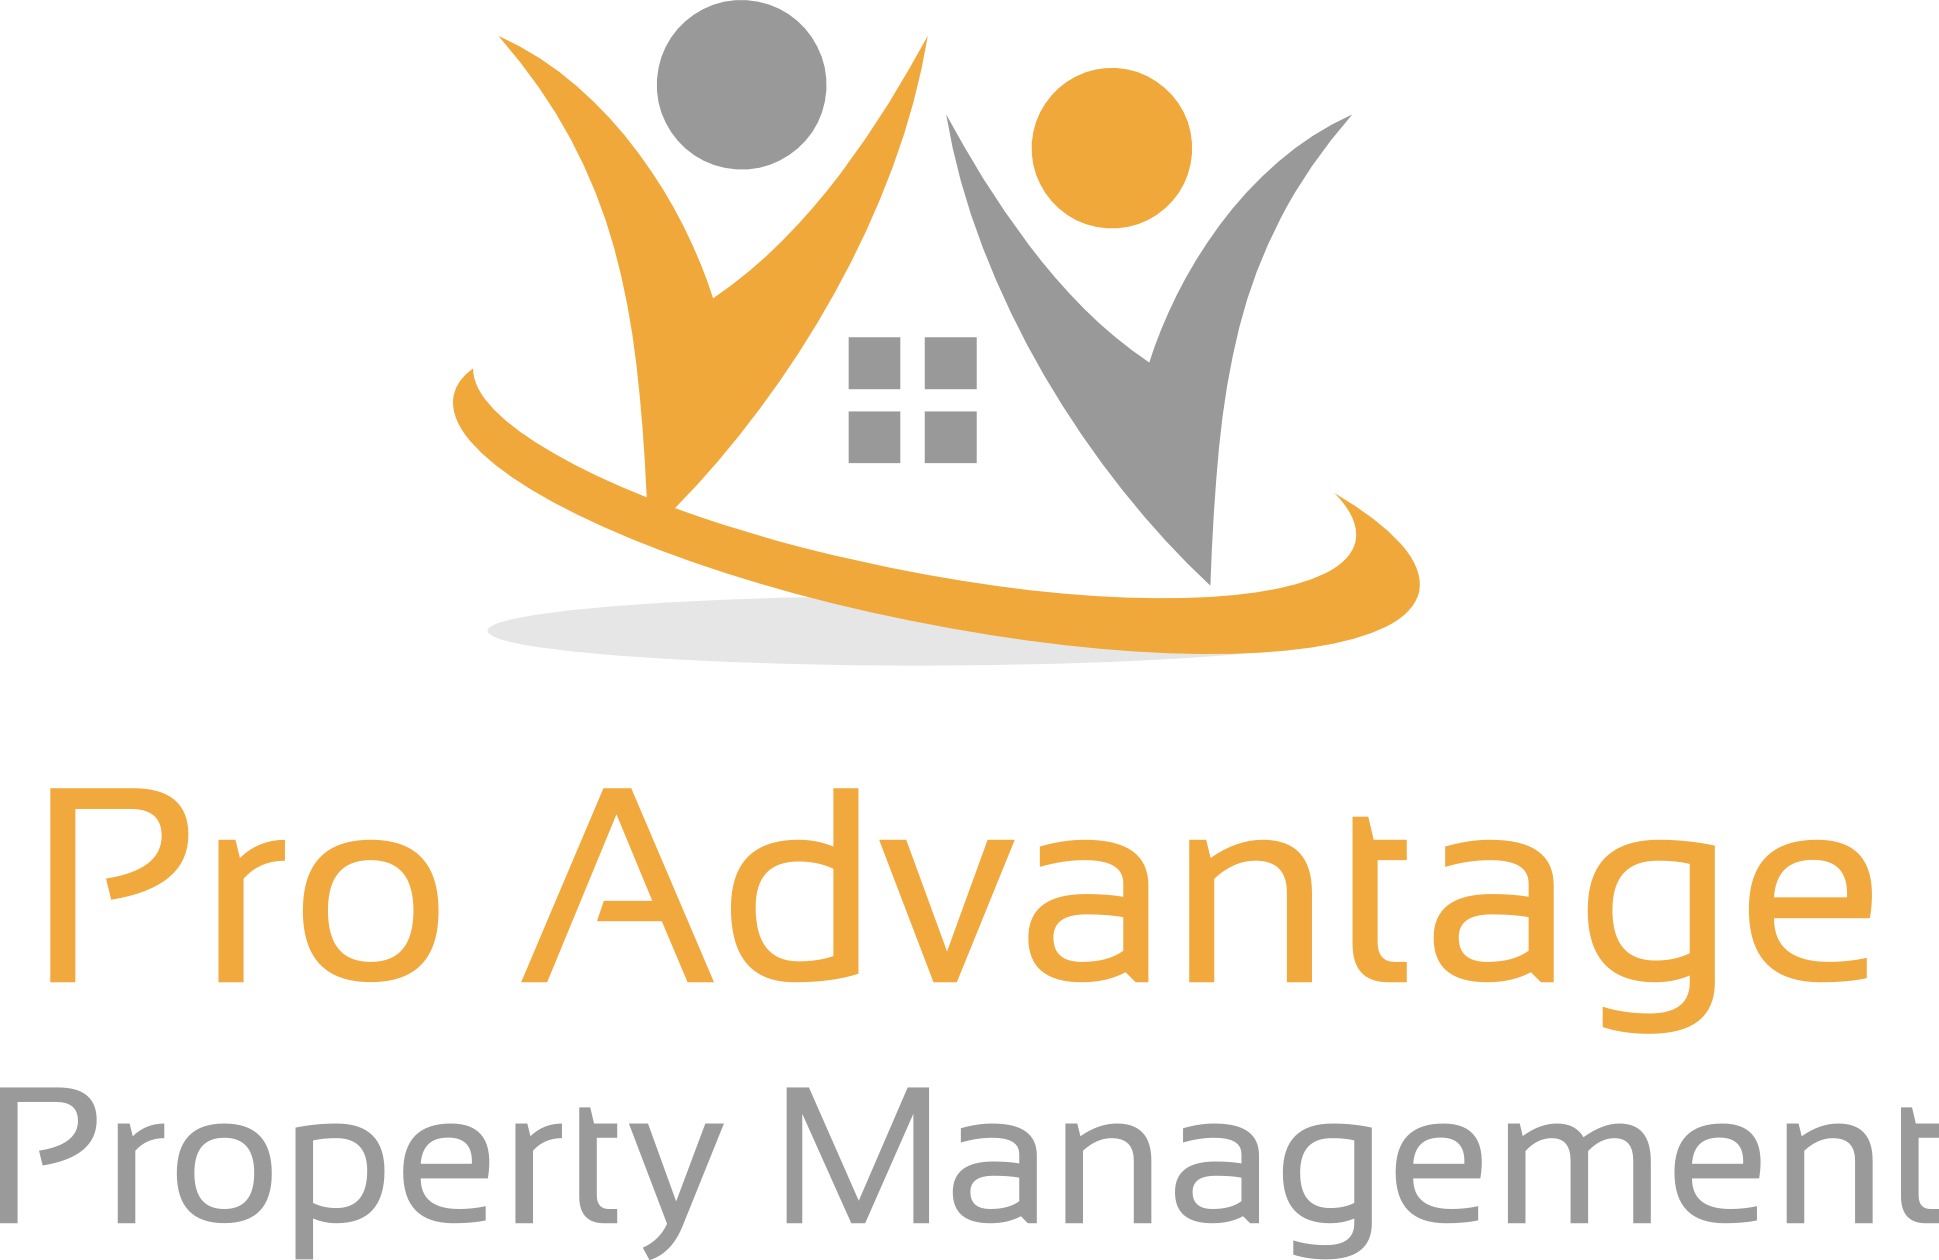 Pro Advantage Property Management